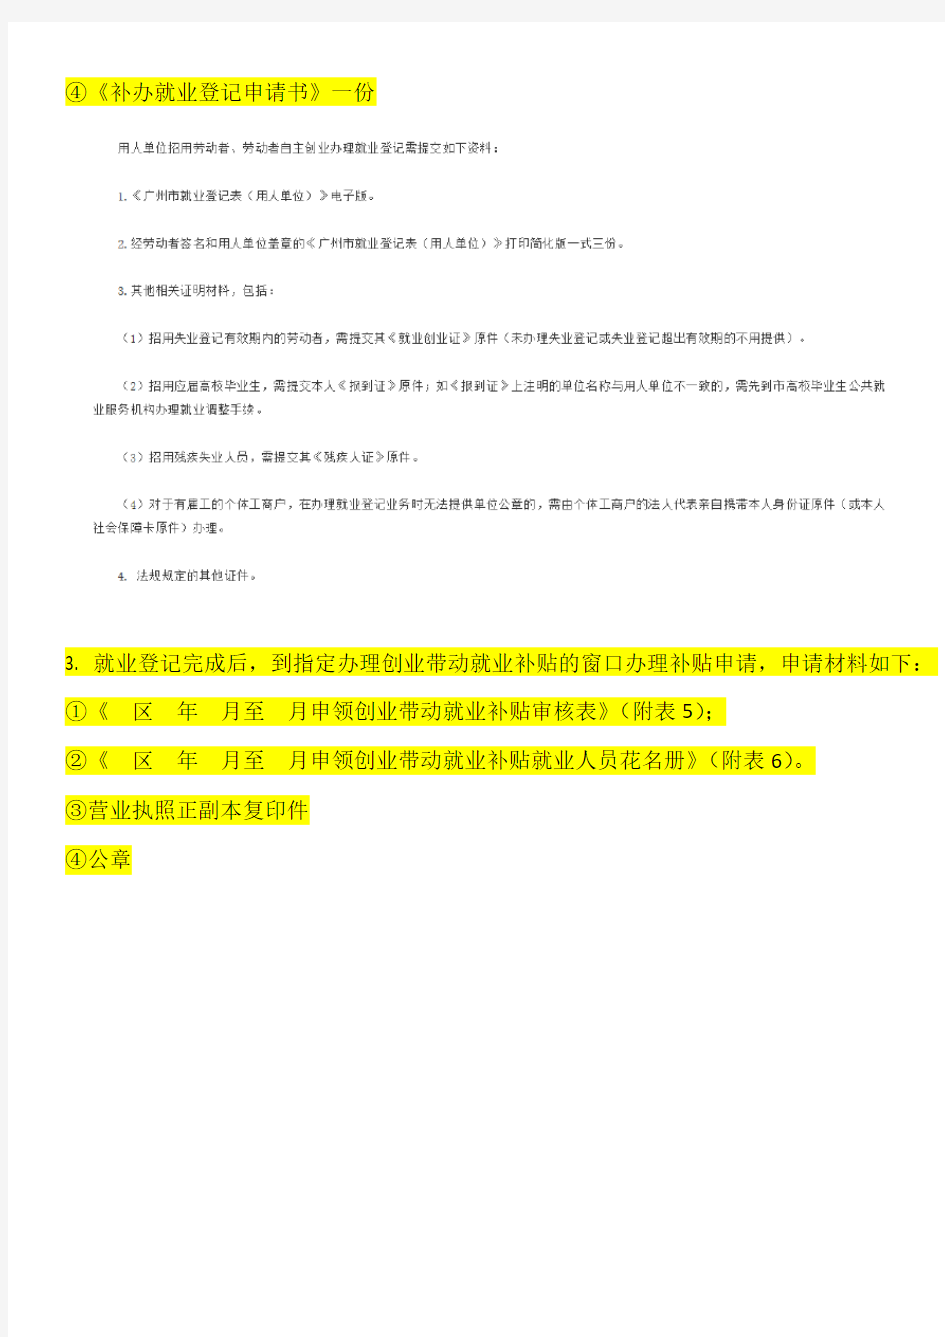 广州市创业带动就业补贴申请流程-更新